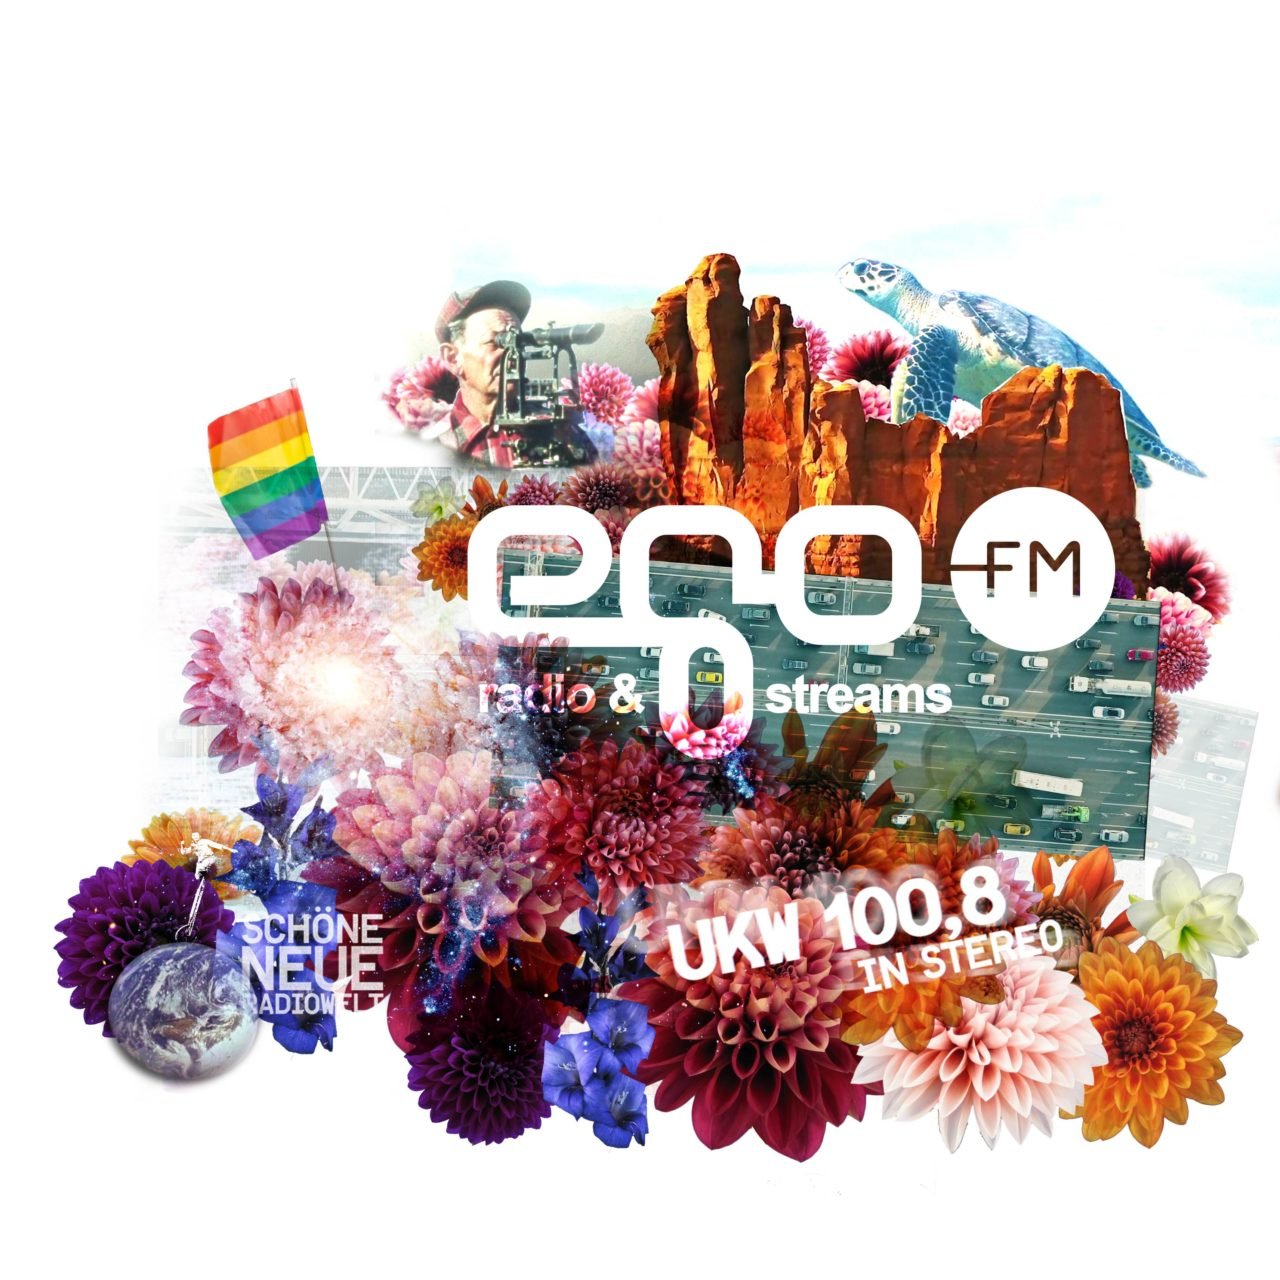 egoFM-2020 youtube CSD 2020